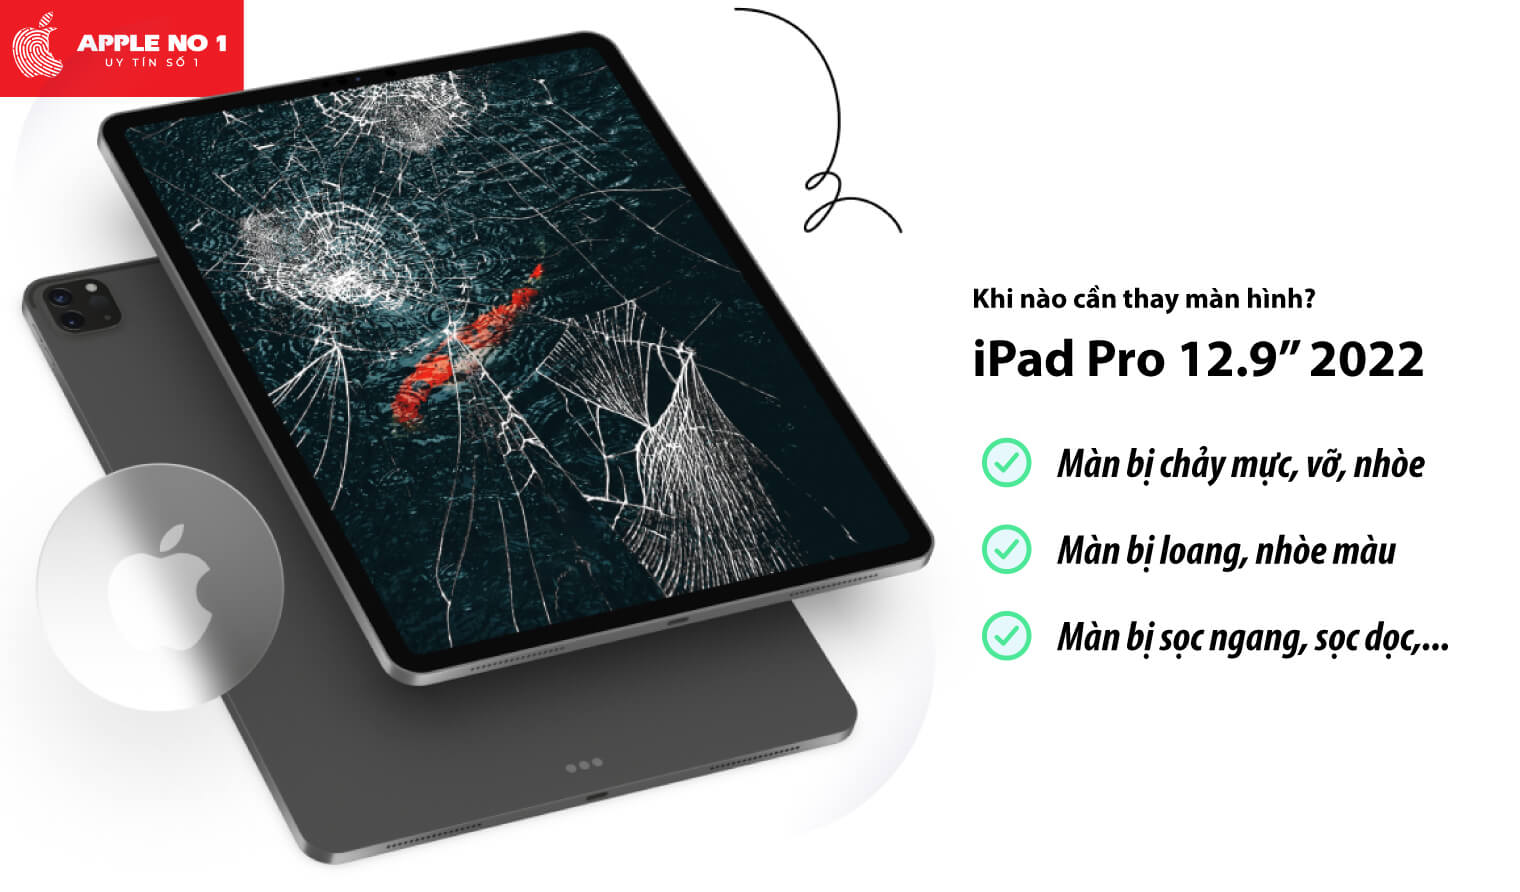 Thay màn hình iPad Pro 12.9 inch 2022 khi nào?